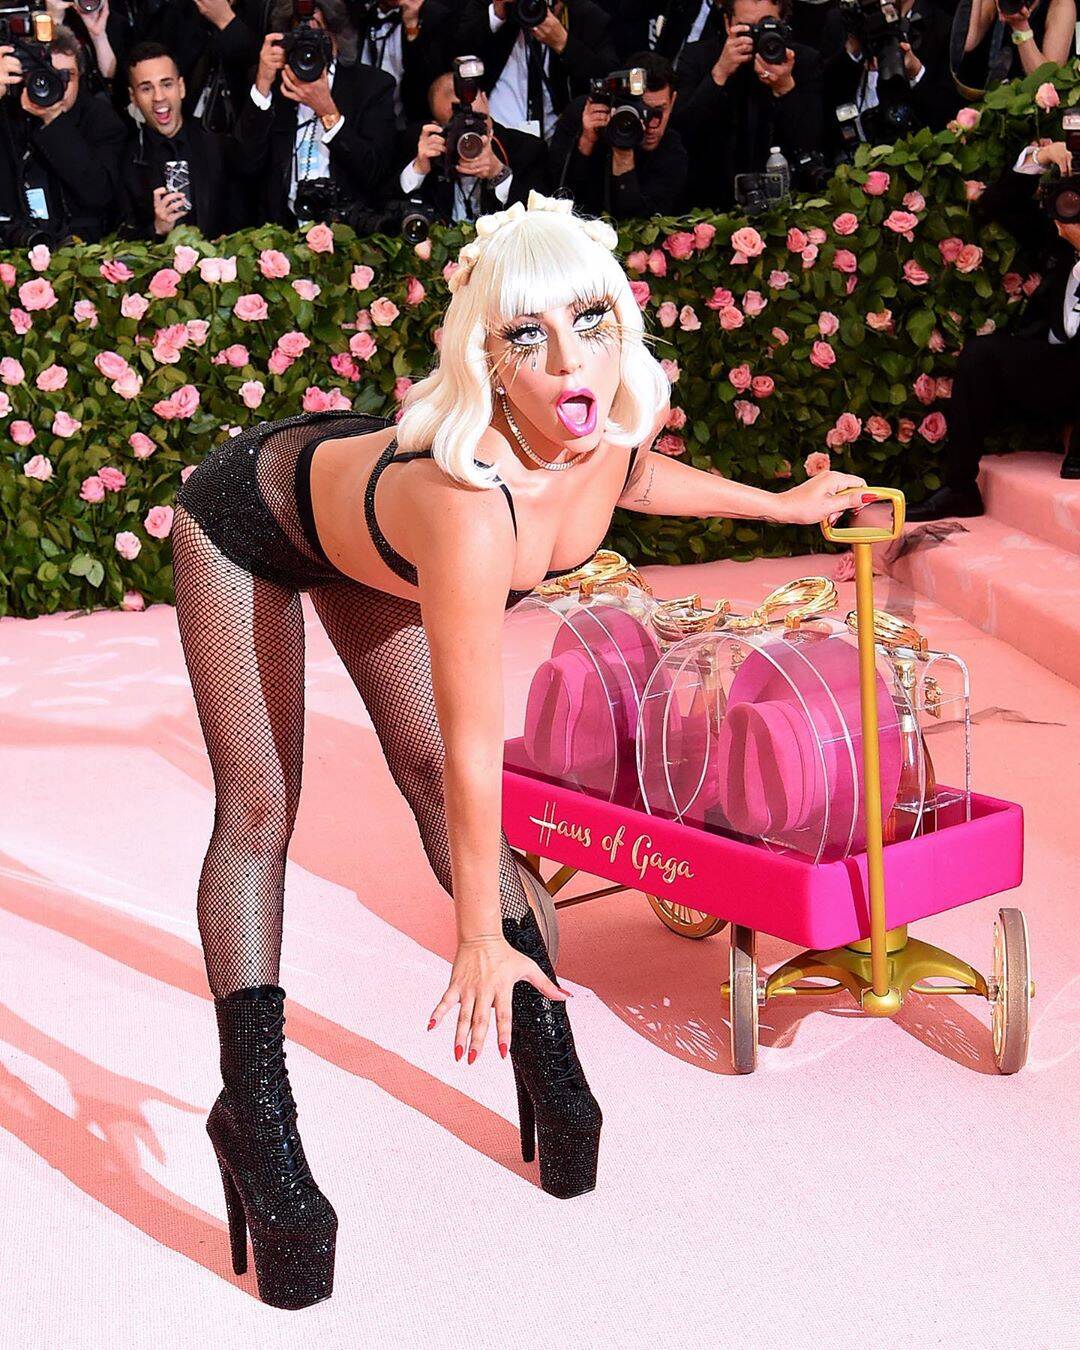 Lady Gaga causa na chegada ao baile MET Gala 2019 / Foto: Reprodução Instagram